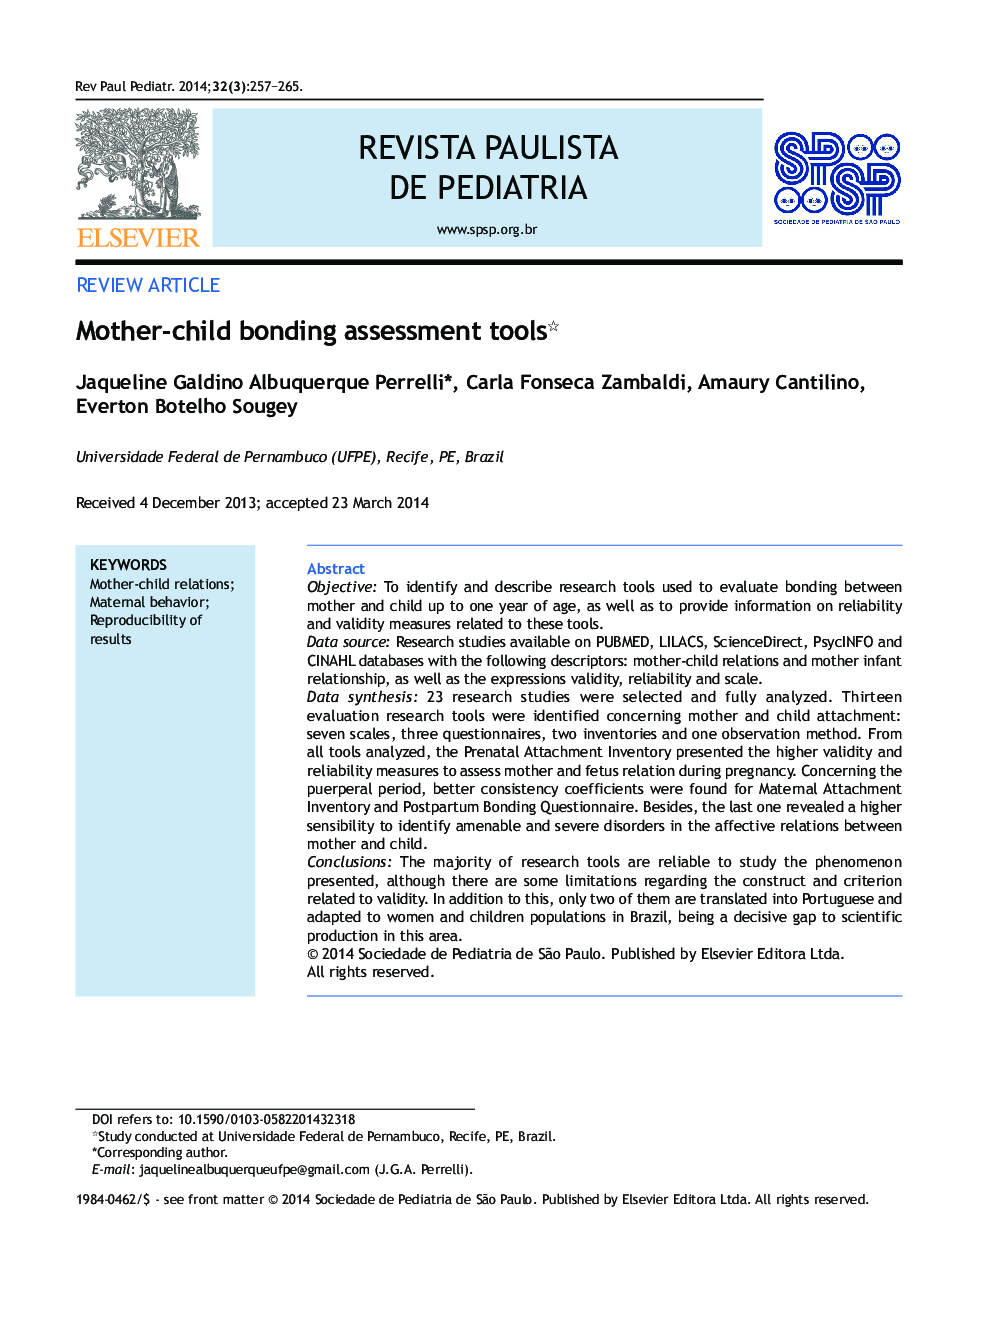 Mother-child bonding assessment tools*